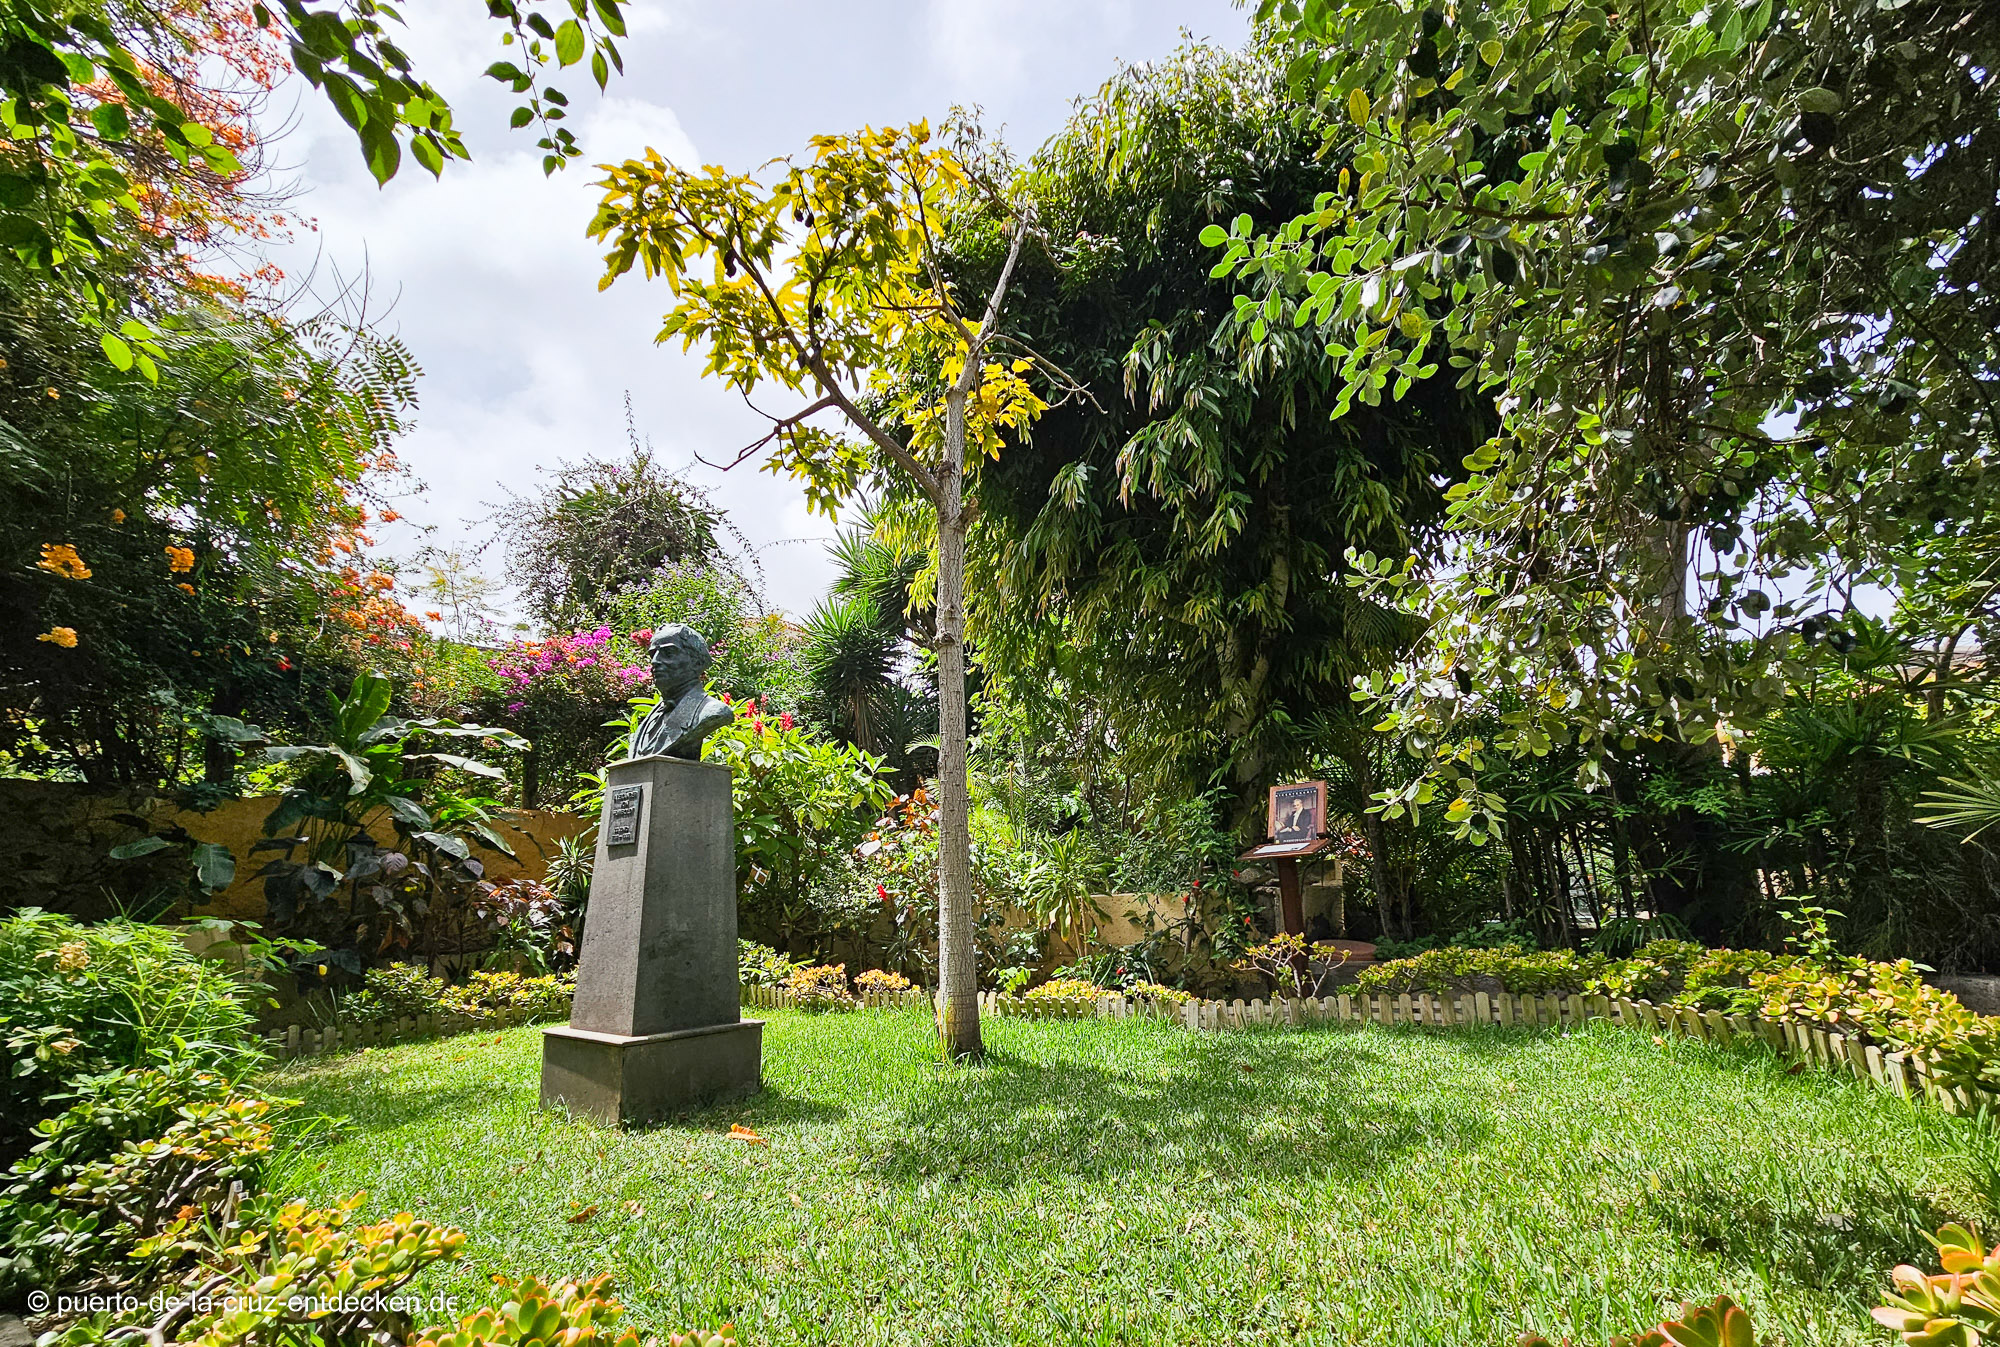 Eine Büste erinnert an den Besuch Alexander von Humboldts im Sitio Litre.